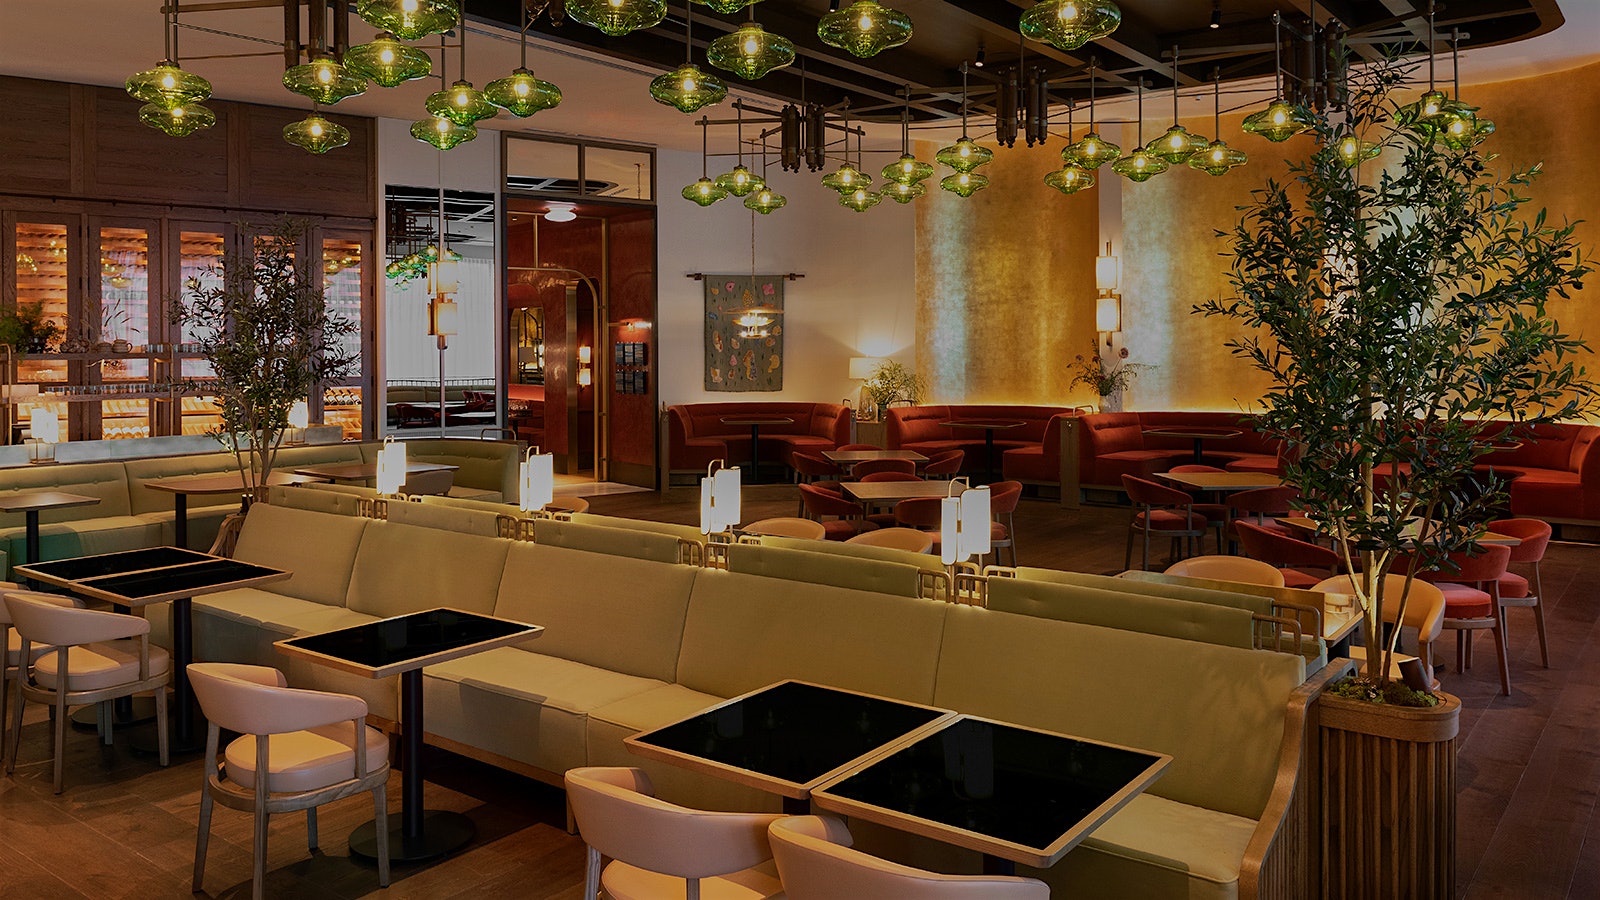  El comedor del restaurante Mara, de inspiración mediterránea, con luces de cristal verde y bancos y sillas en tonos rojos y dorados